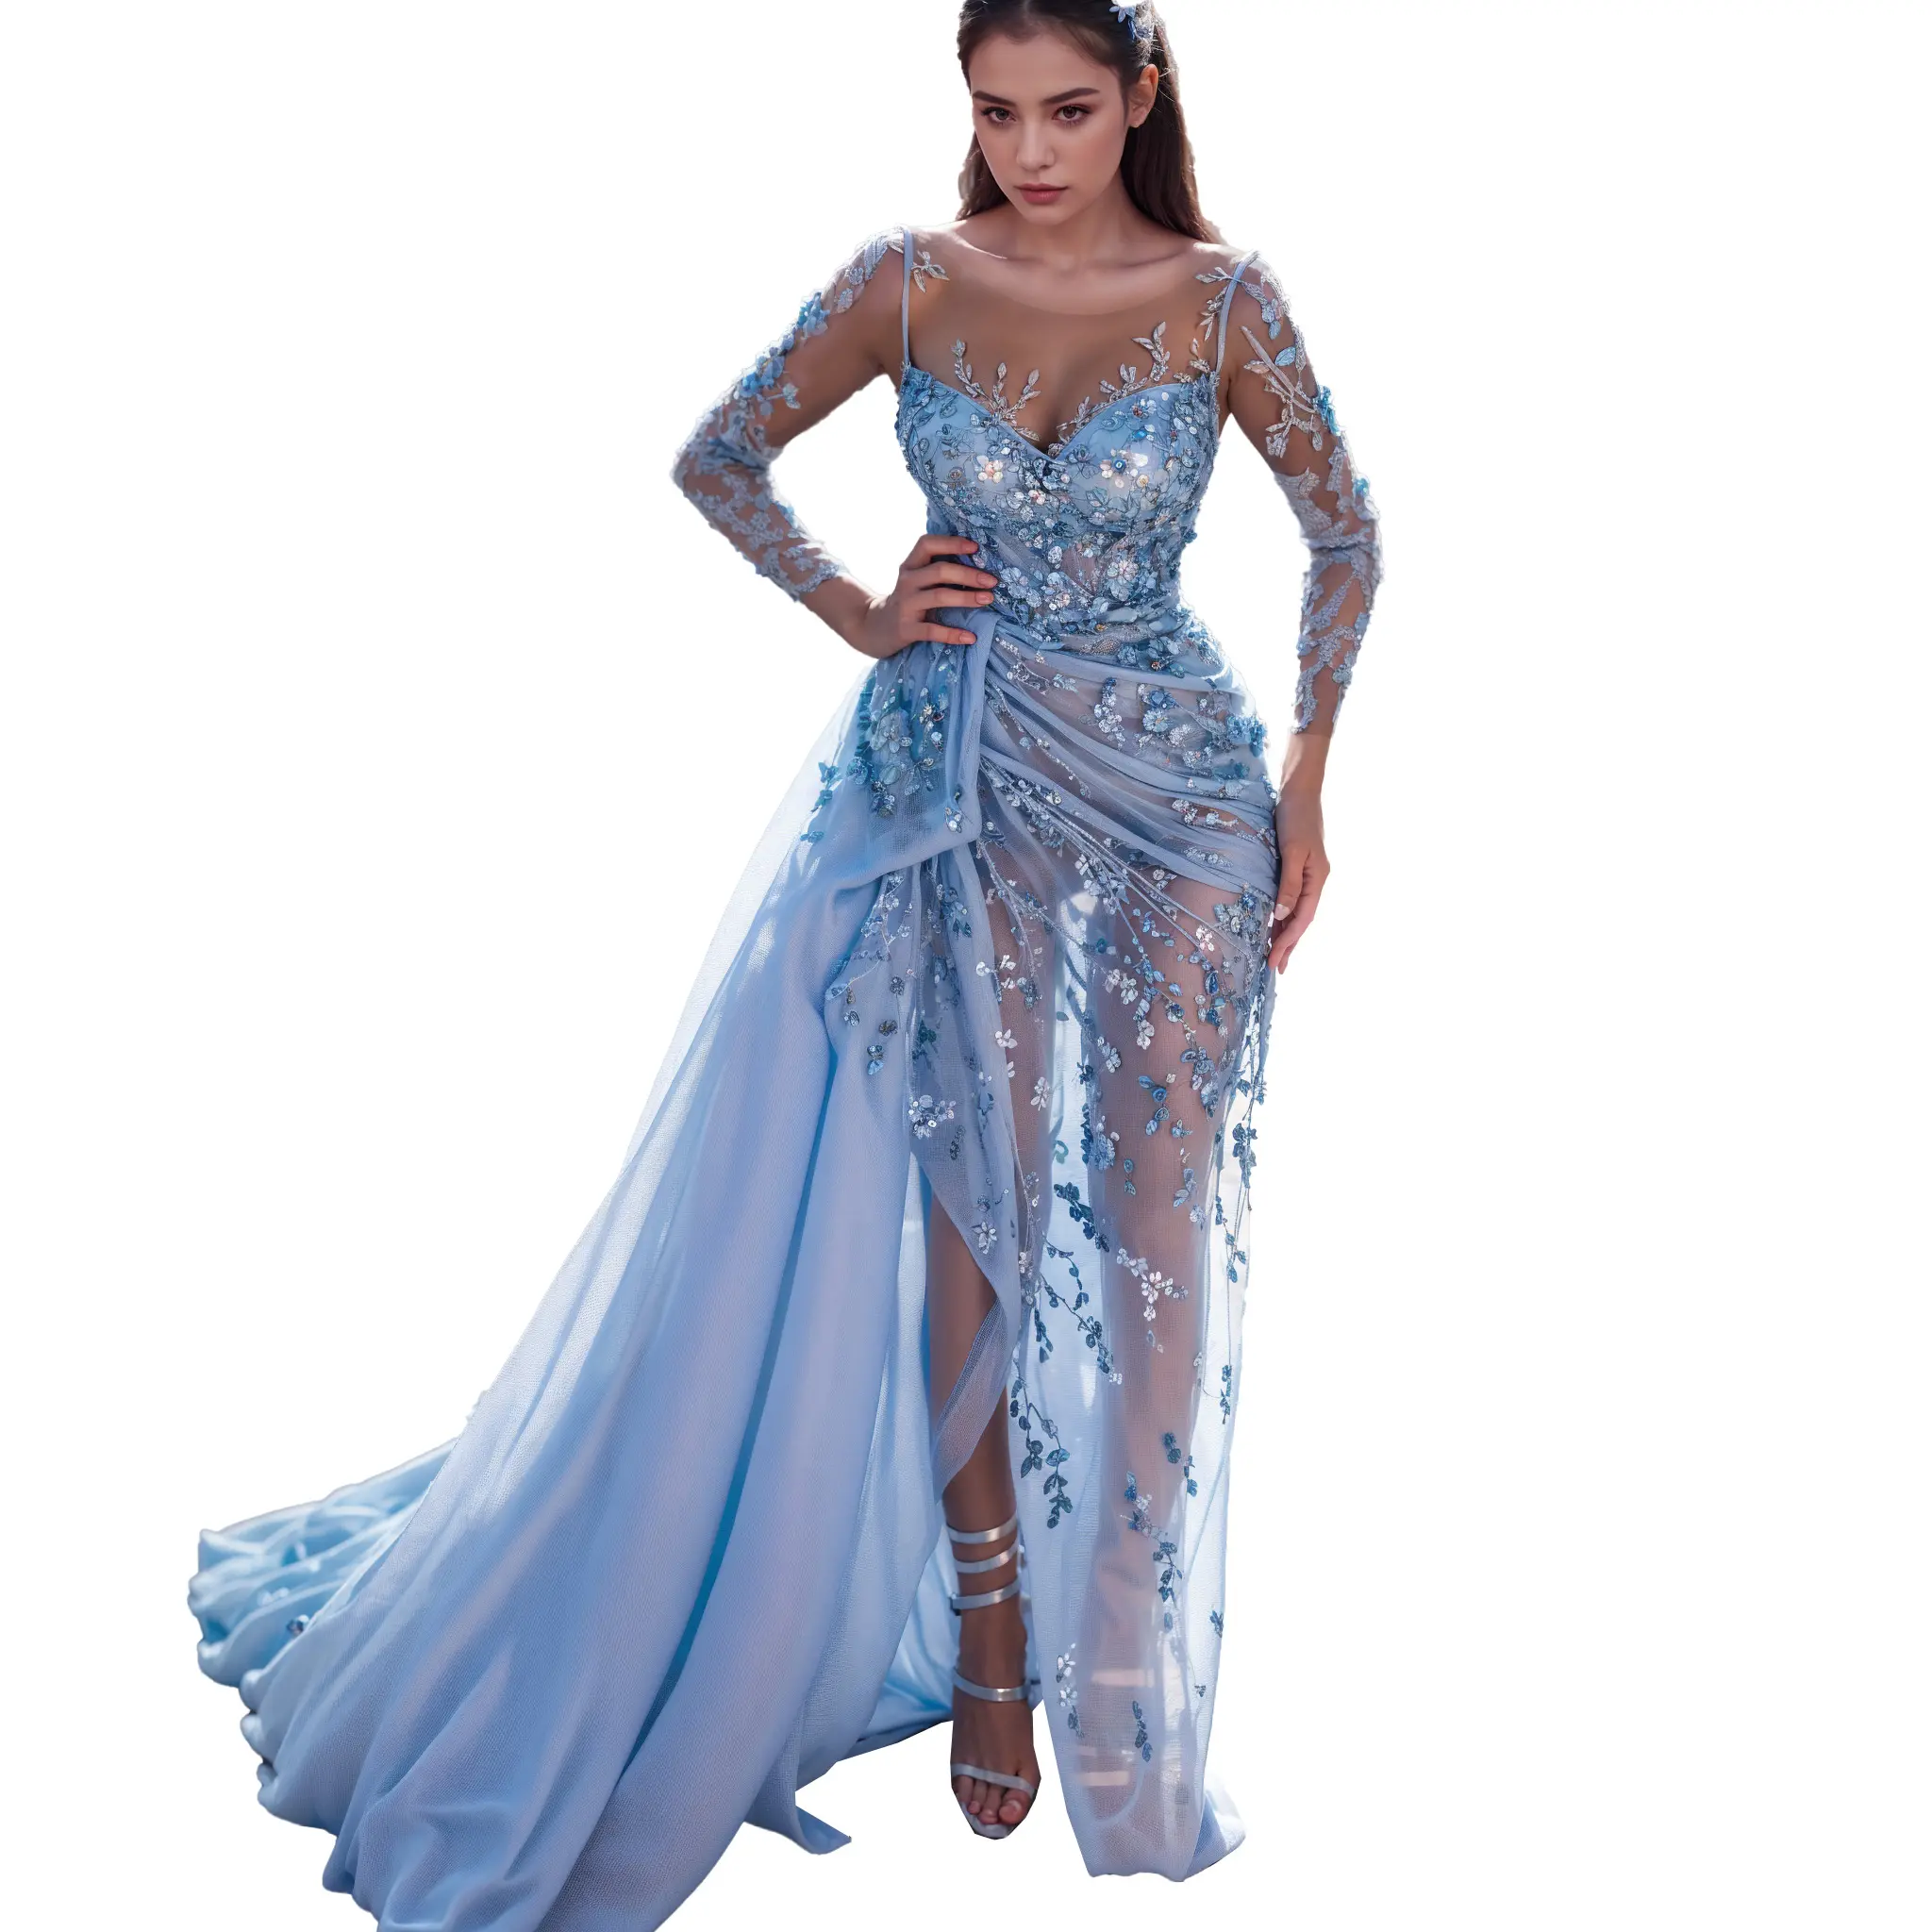 Gaun malam ukuran besar lengan panjang biru langit cantik gaun malam belahan panjang putri duyung, dihiasi dengan manik-manik berkerut